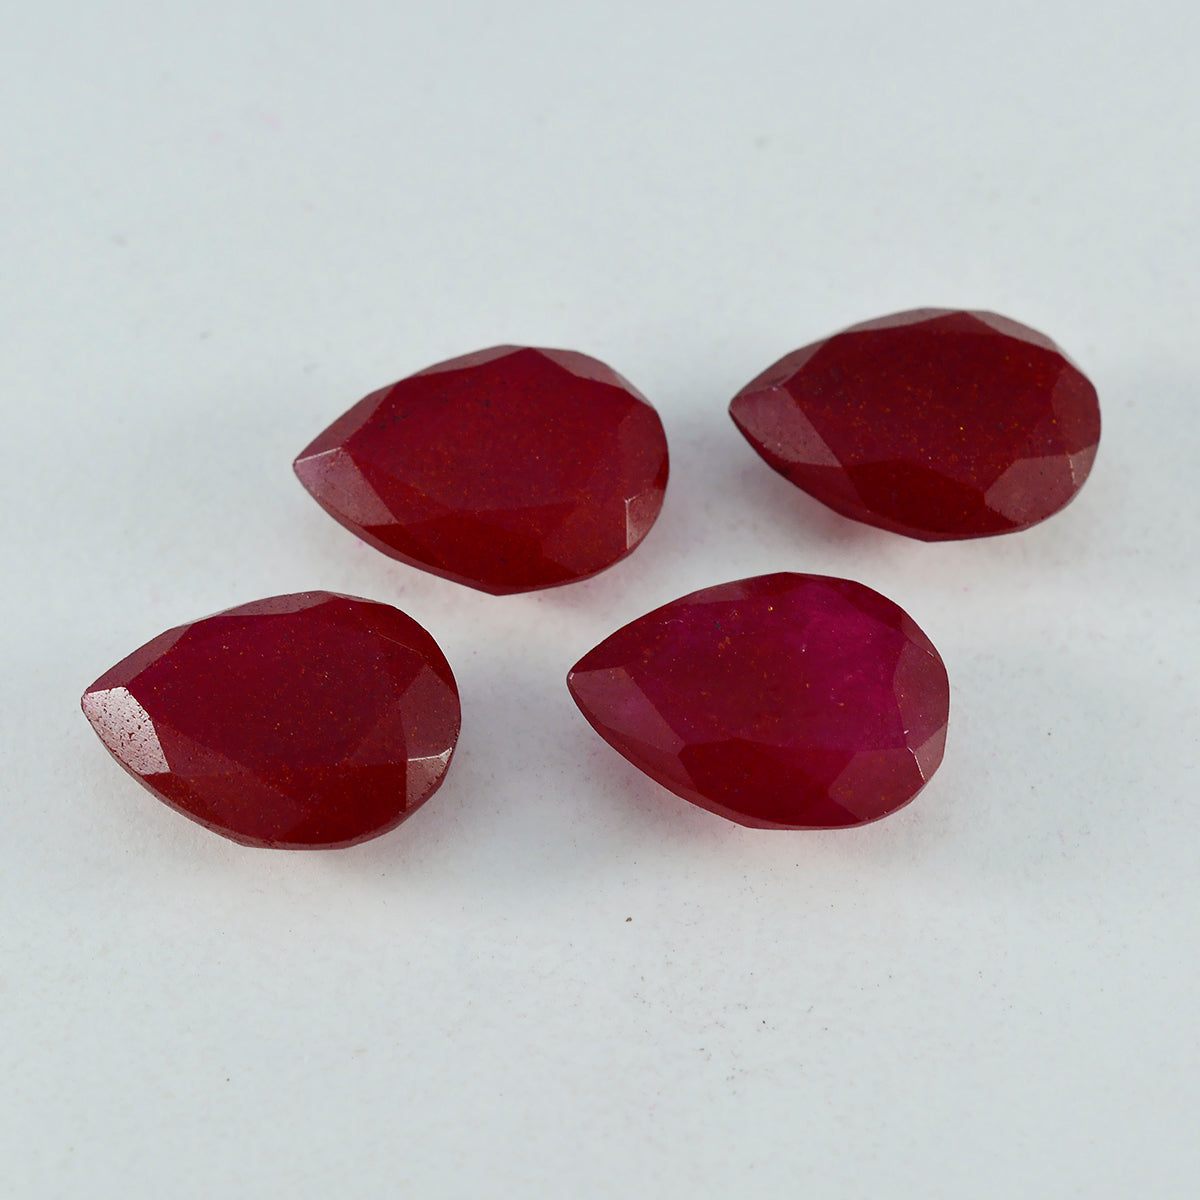 riyogems 1 шт. натуральная красная яшма граненая 8x12 мм грушевидная форма отличное качество свободный драгоценный камень